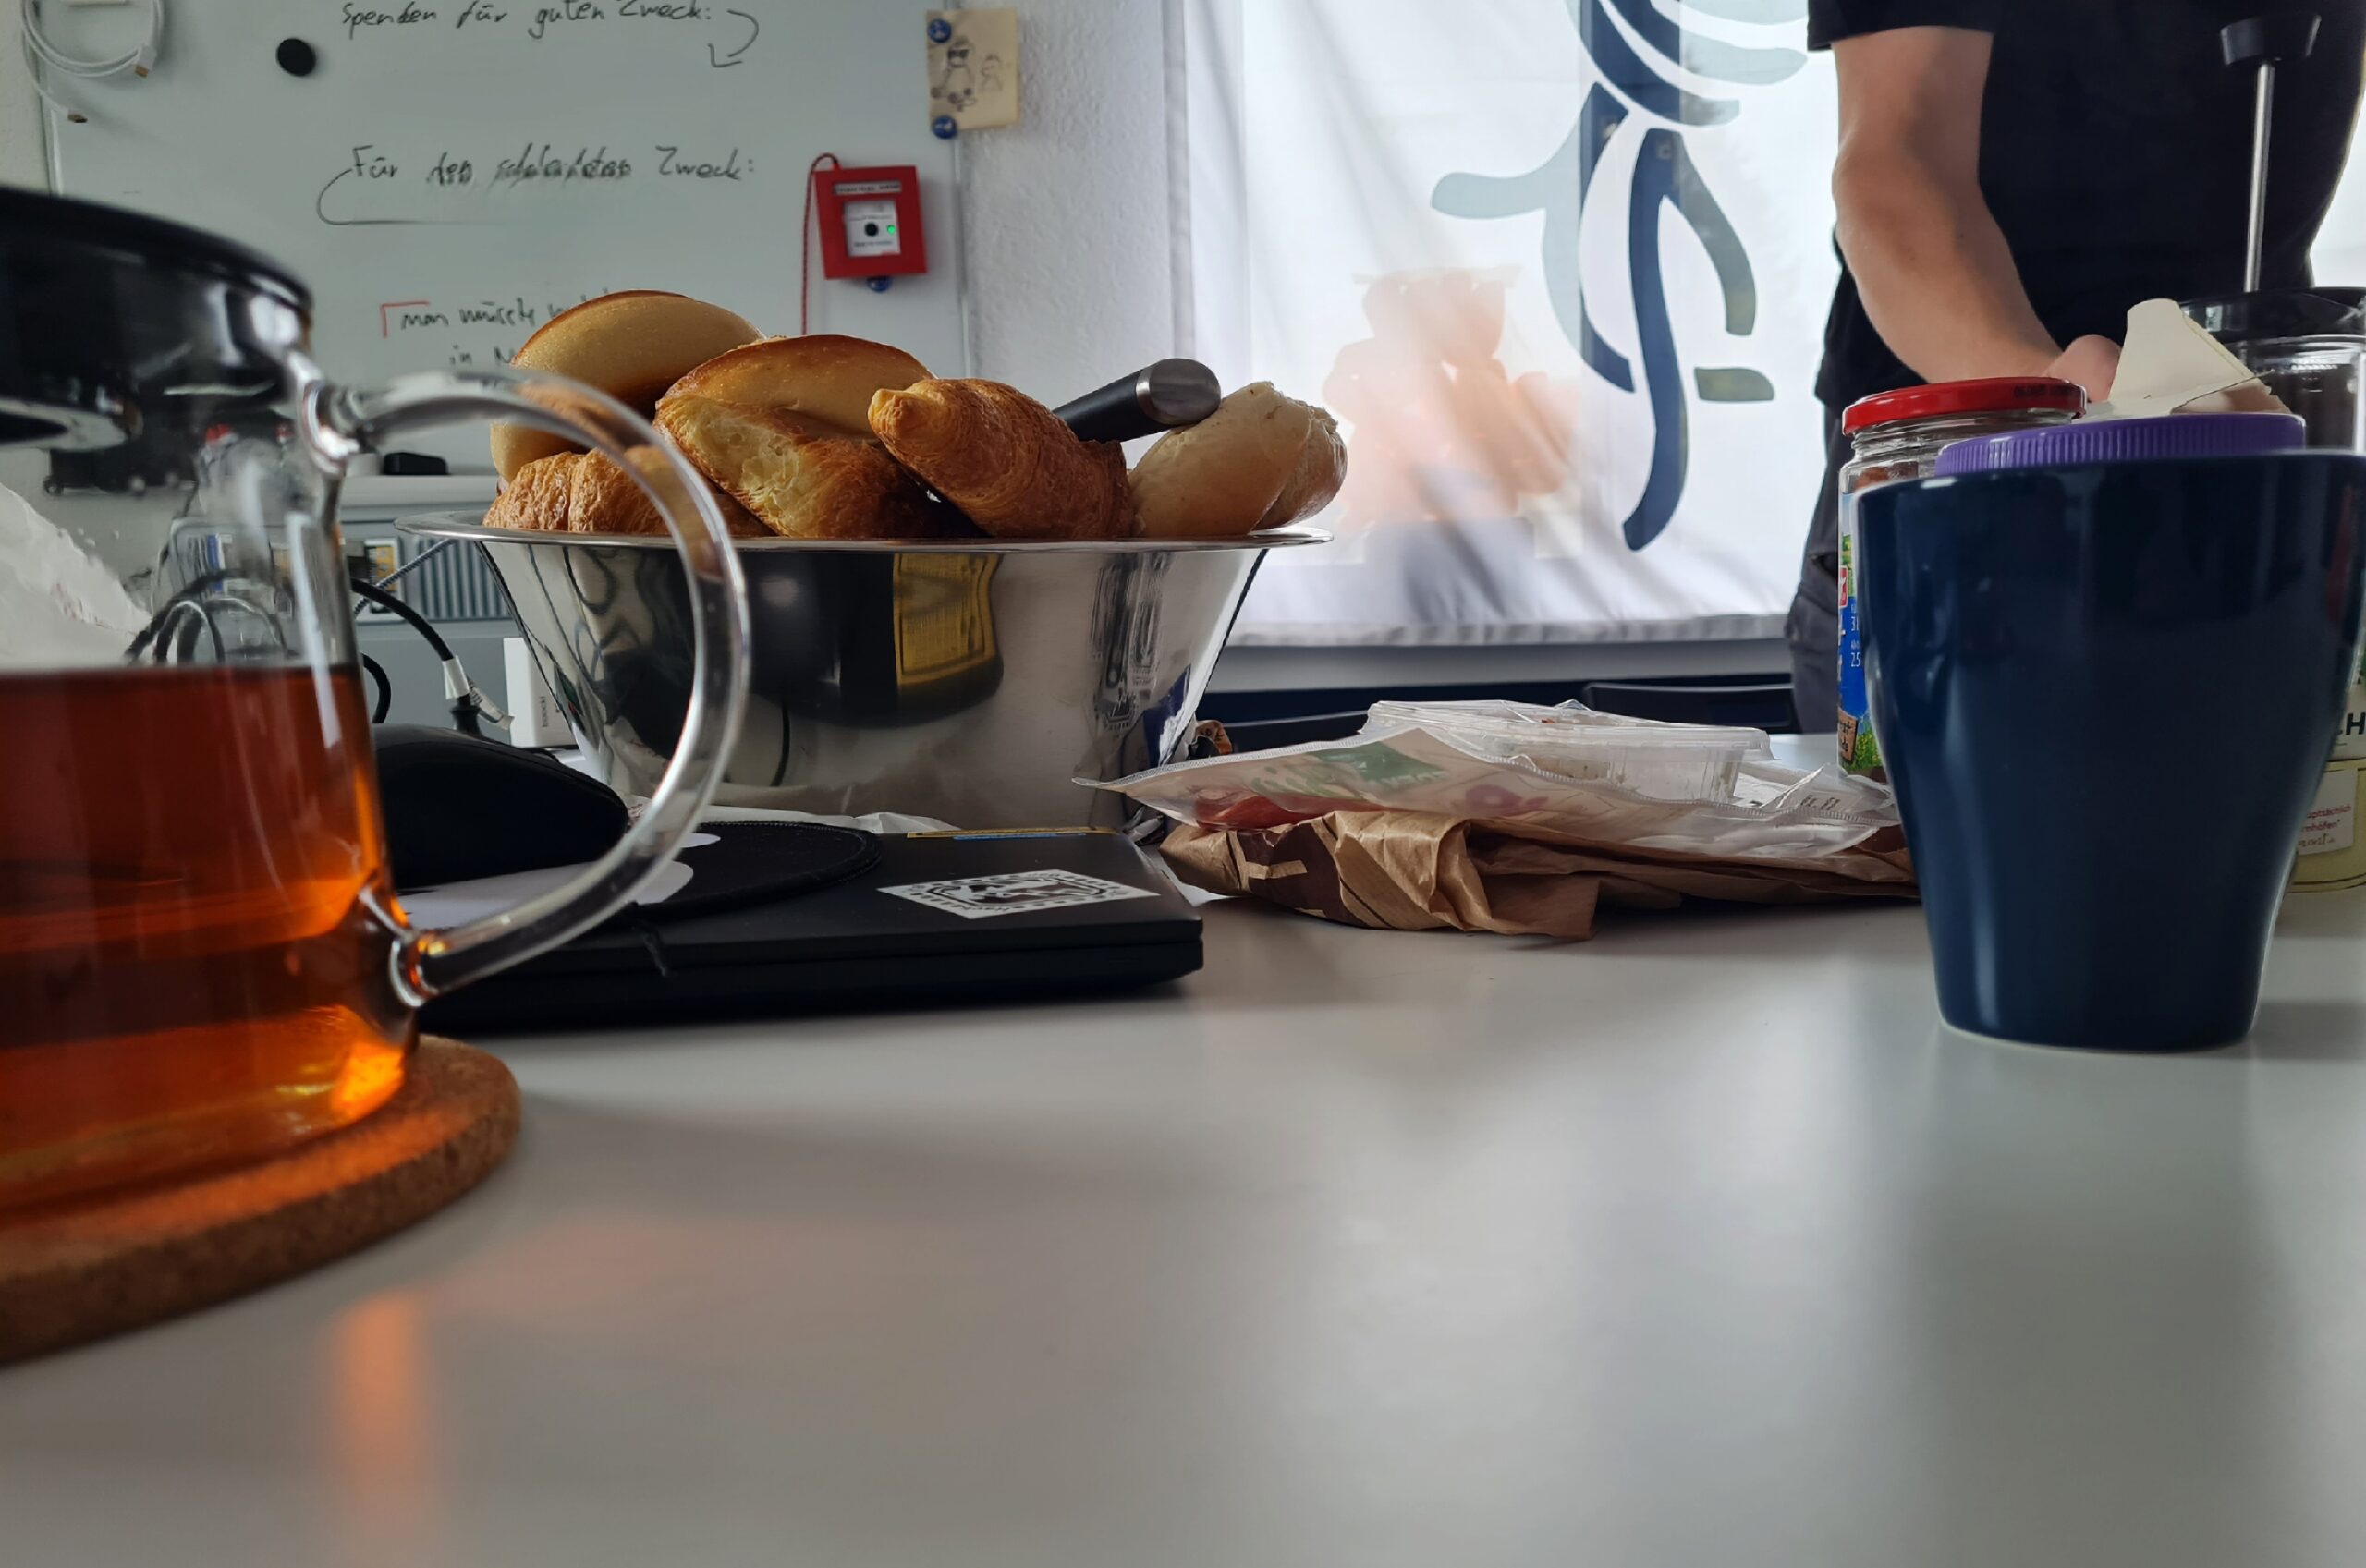 Foto aus der Froschpersektive von einem gedeckten Frühstückstisch. Zu sehen sind Brtöchen, eine Kanne Tee, eine Tasse, Aufschnitt aber auch ein Laptop und ein Whitboard mit etwas schwer zu lesenden Text und eine Flagge mit Chaosknoten